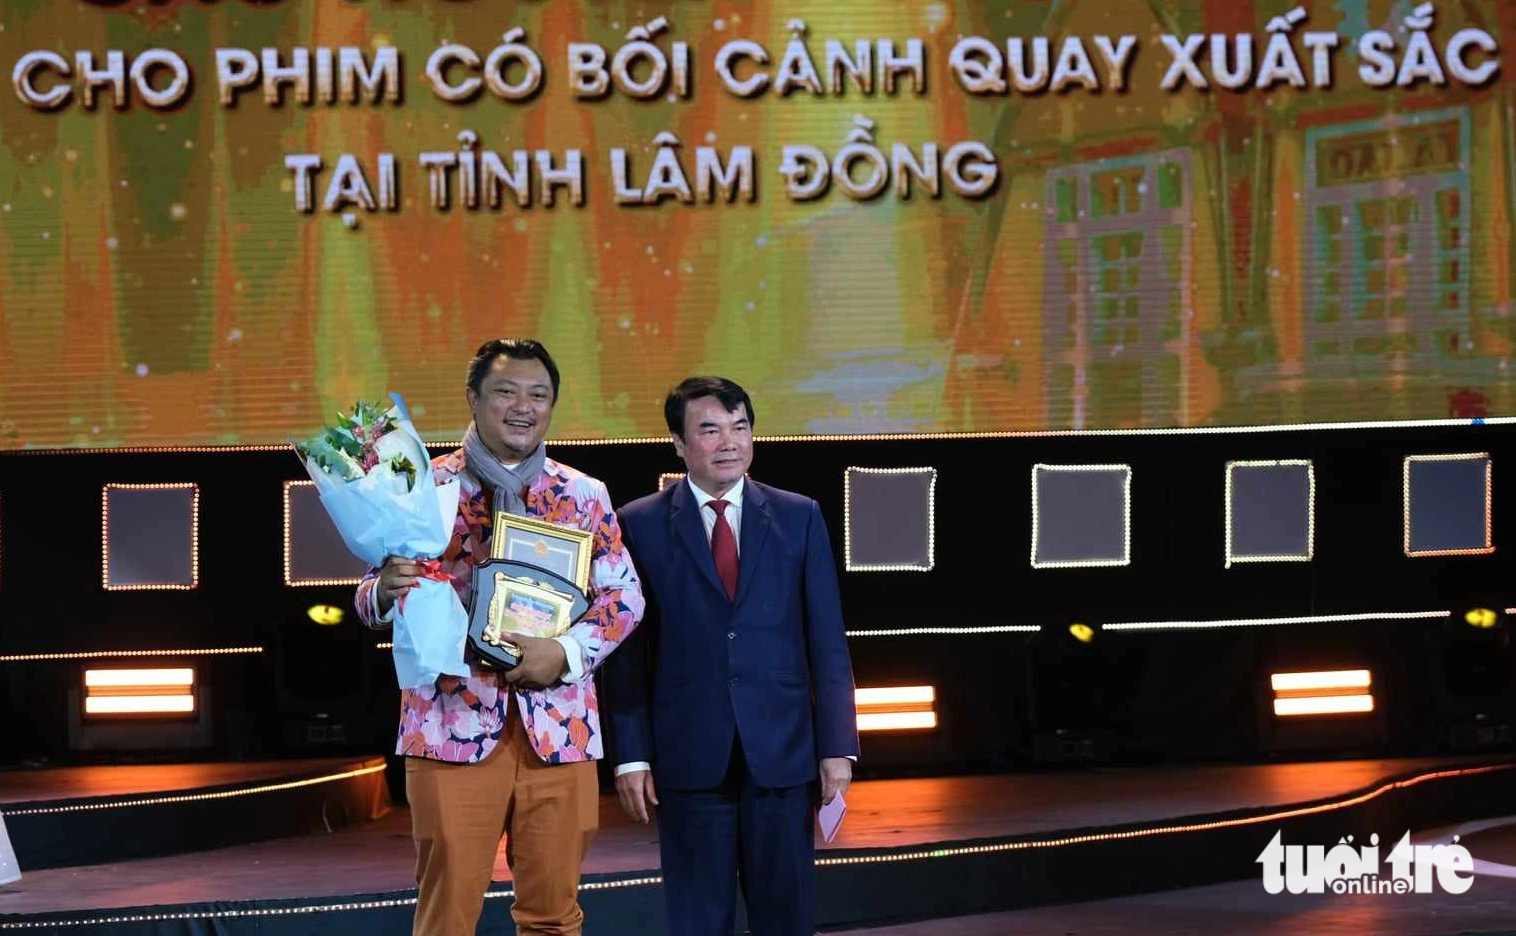 Đạo diễn Phan Gia Nhật Linh (phim Em và Trịnh) lên nhận giải thưởng đặc biệt nhất của Liên hoan phim Việt Nam lần thứ 23 - giải Cao nguyên hùng vĩ của UBND tỉnh Lâm Đồng dành cho phim bối cảnh được quay tại Lâm Đồng - Ảnh: MAI VINH